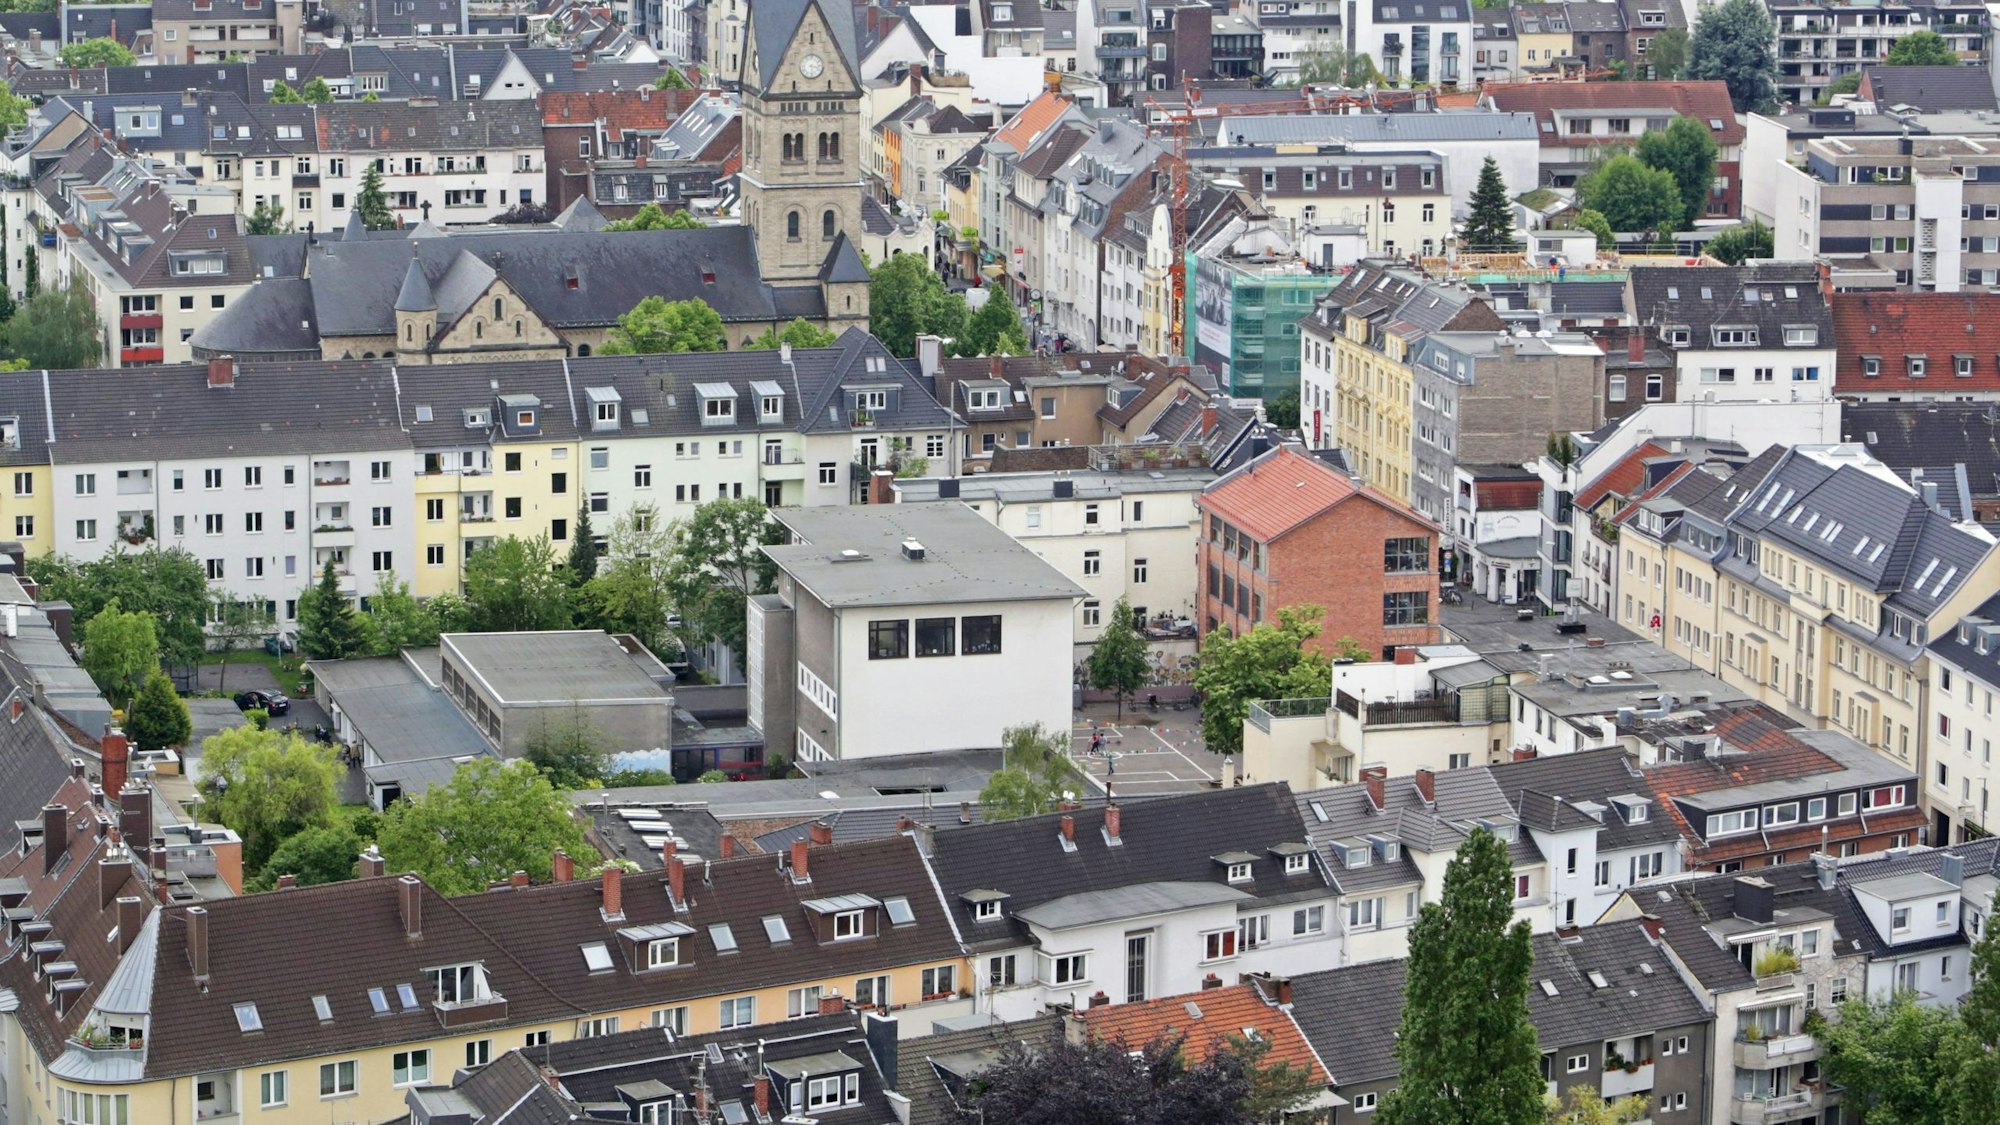 Luftaufnahme des Stadtteil Köln-Sülz, aufgenommen vom Uni-Center aus